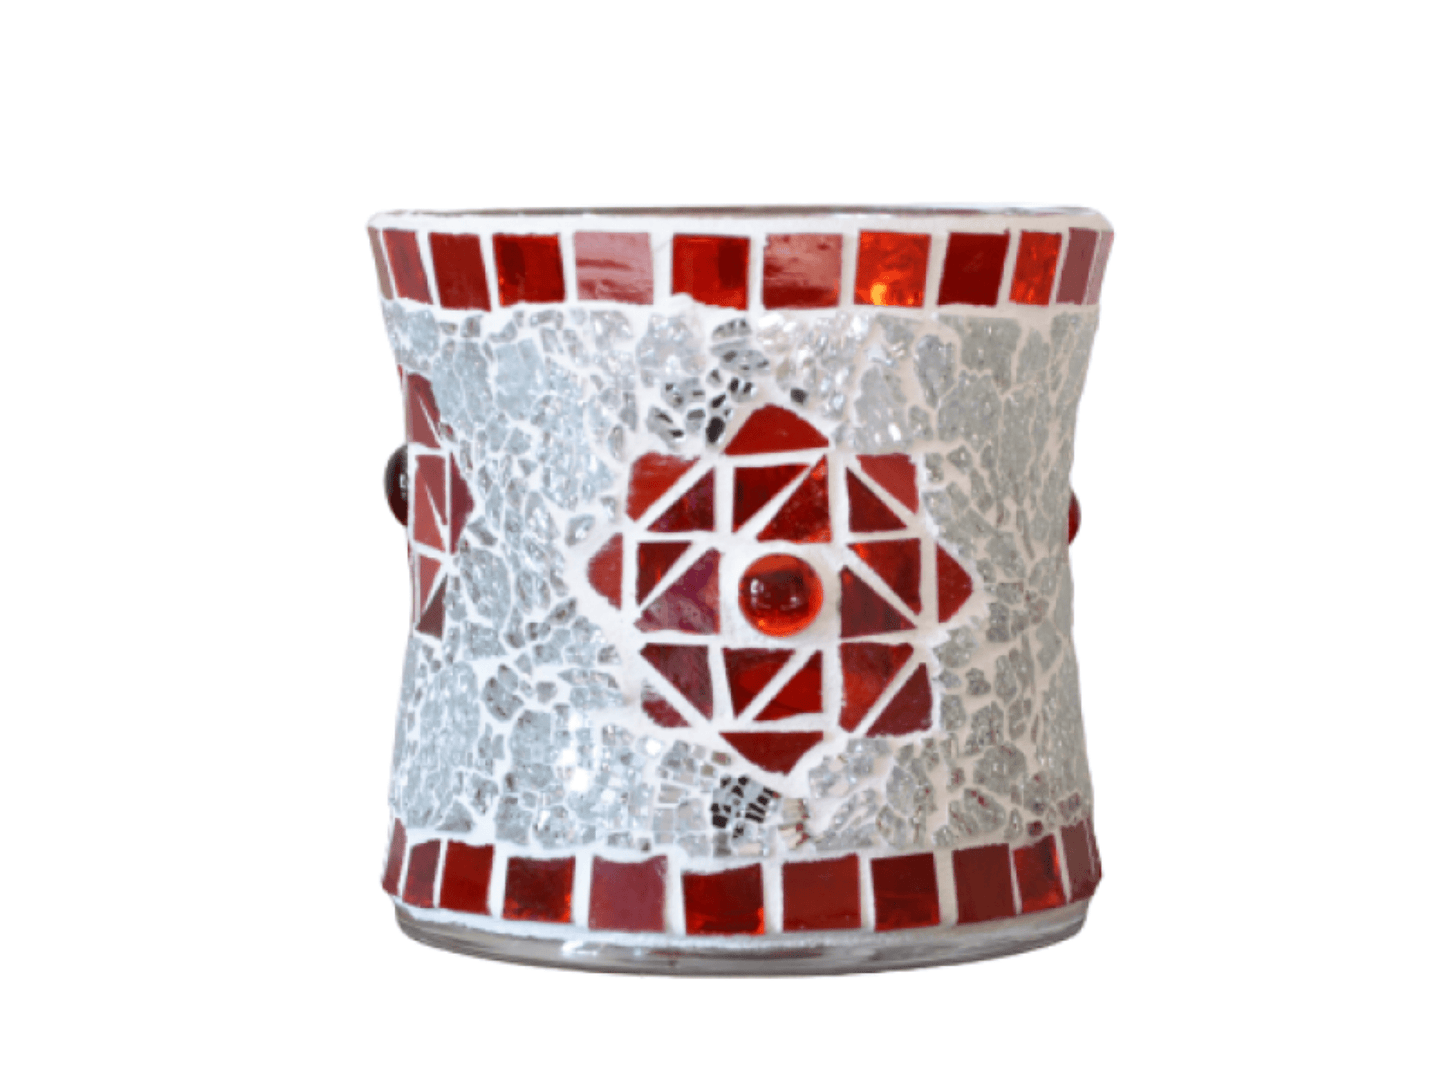 Mosaik Windlicht Stern rot silber in 2 Größen - Mosaikkasten Advent aus alt mach neu